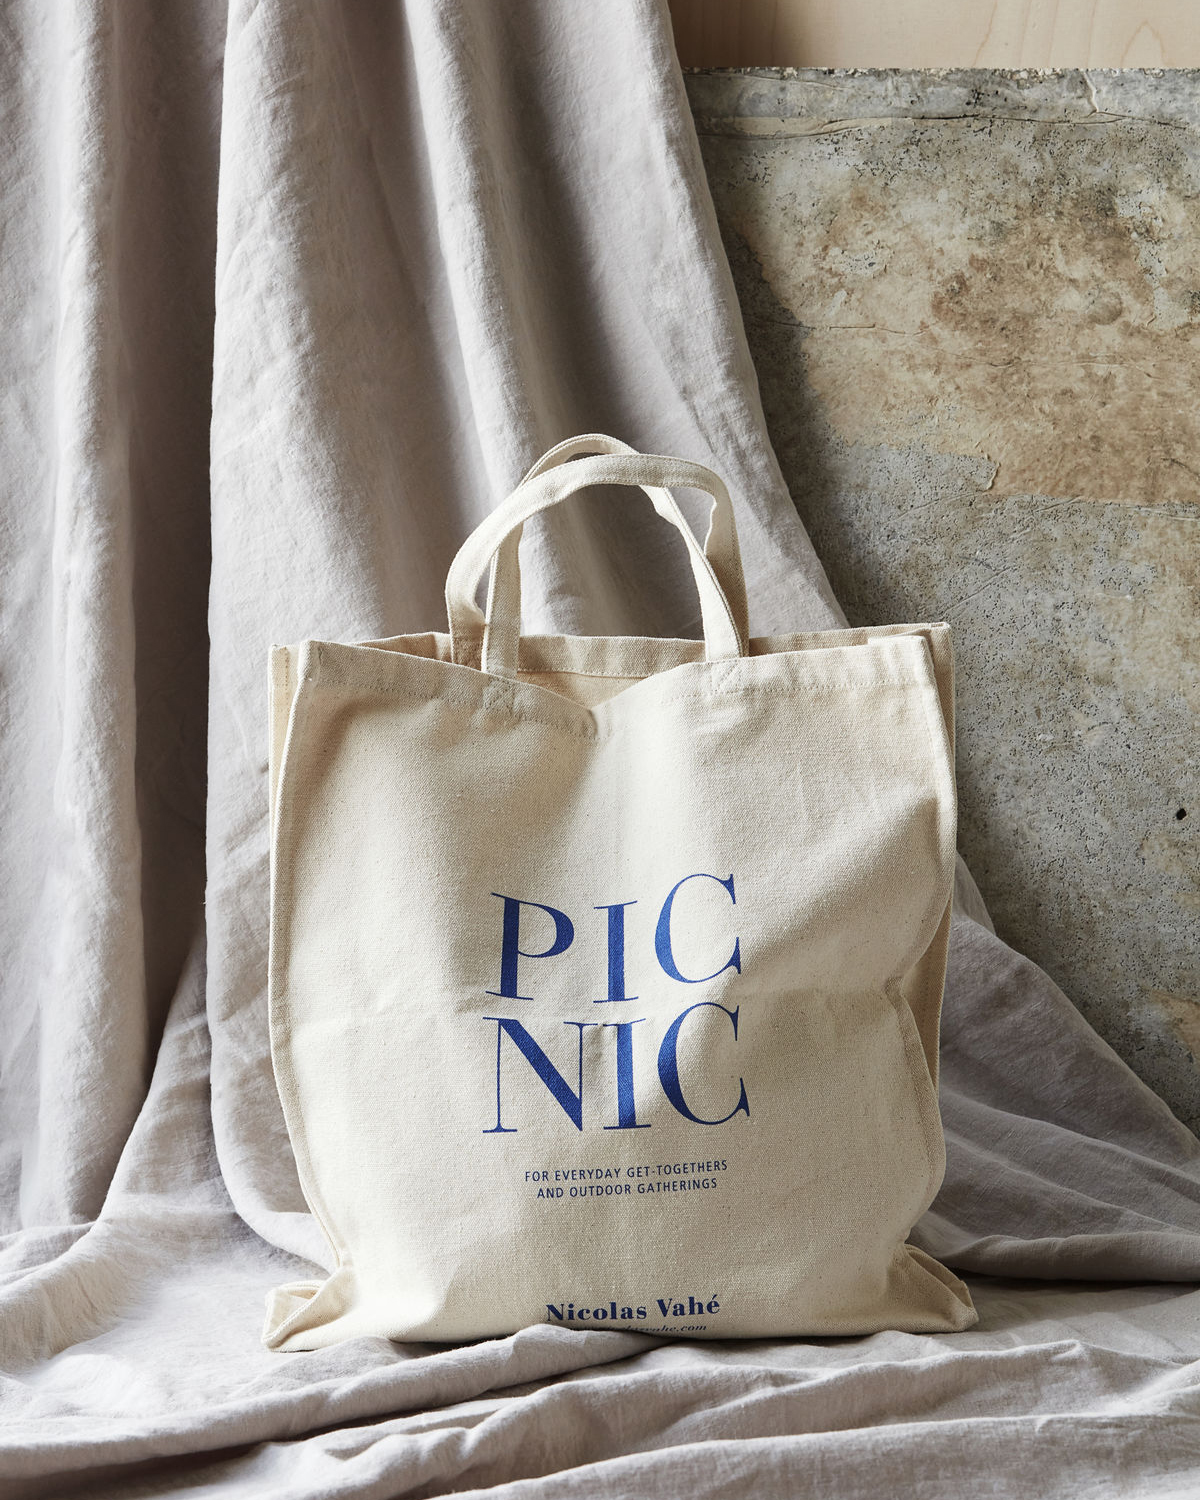 Tasche/Shopper, Picnic, Weiß von Nicolas Vahé, ca. 9,5 x 38 x 41 cm